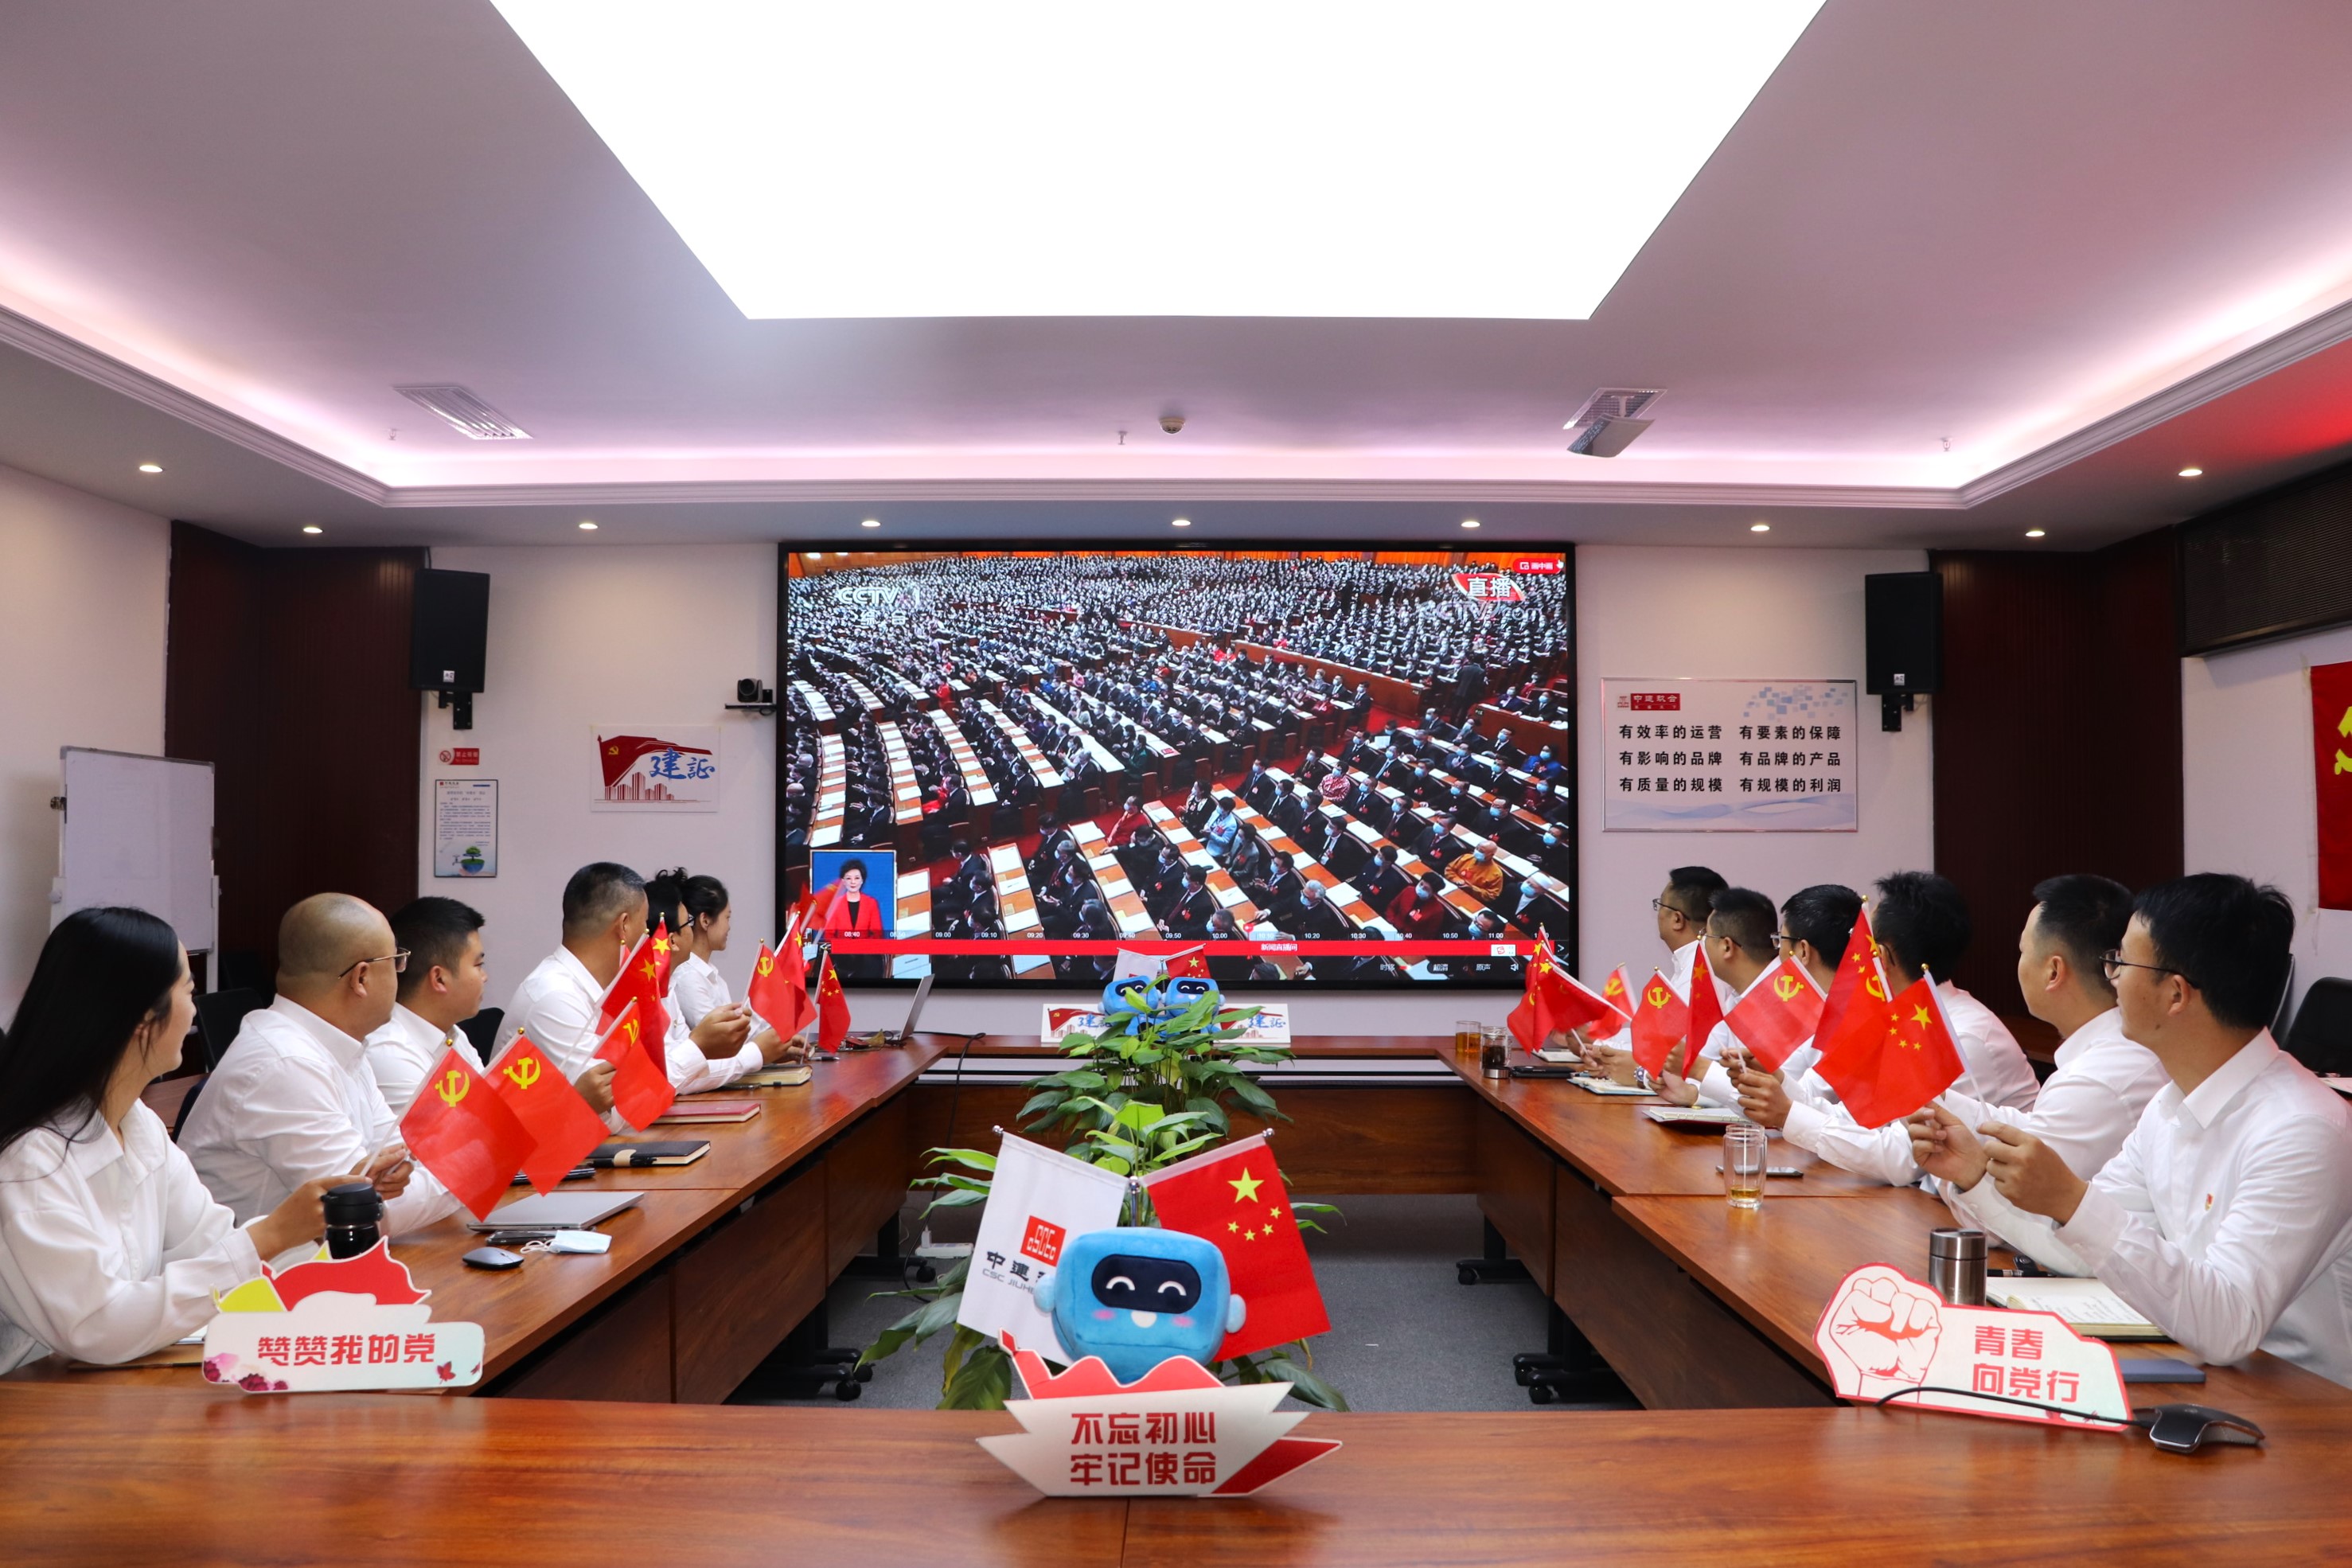 011中建玖合西南区域集体观看党的二十大开幕式.jpg